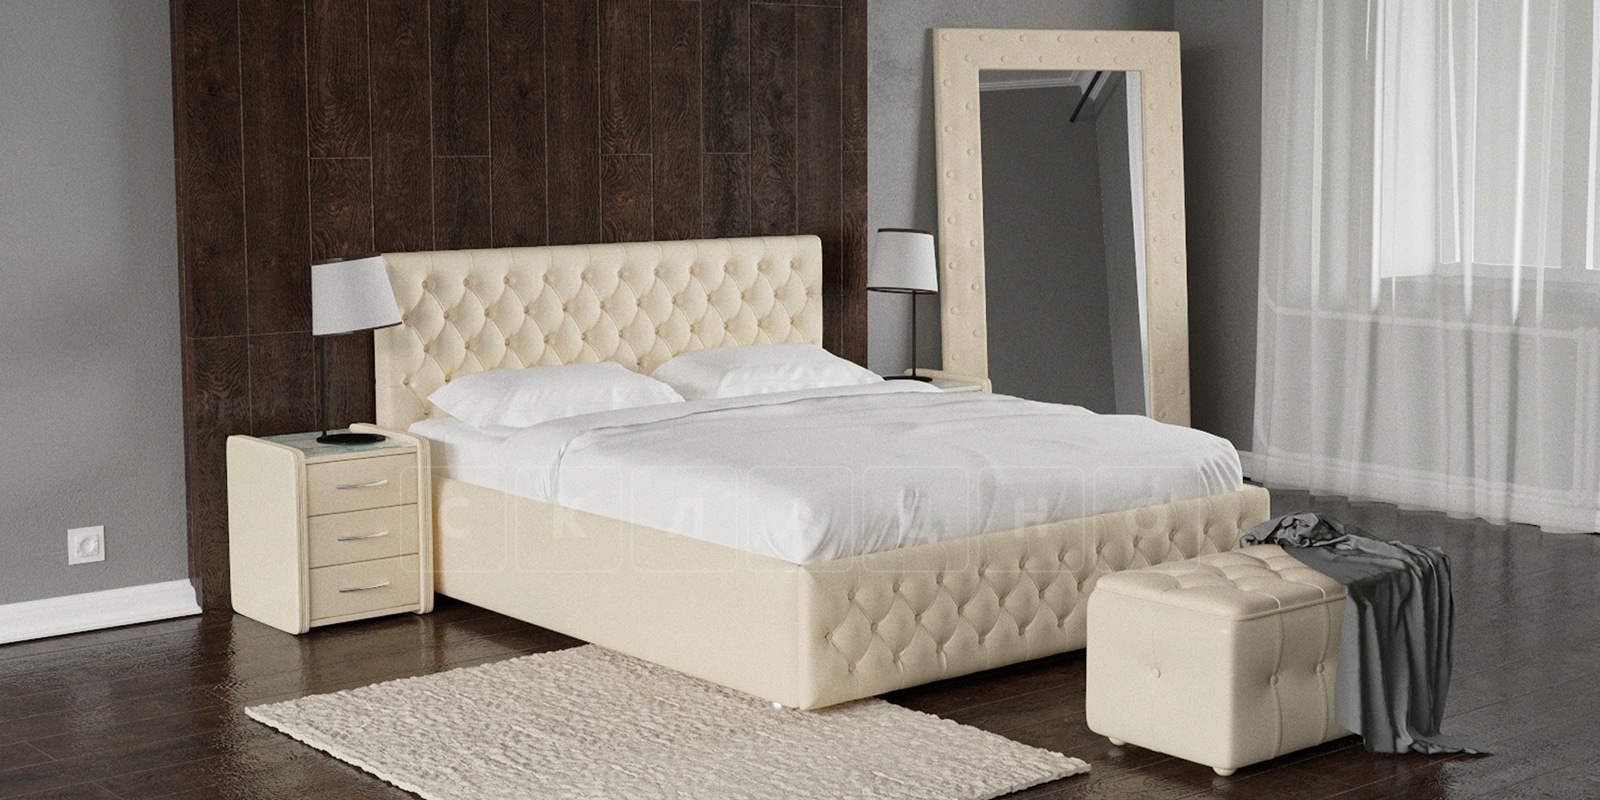 Мягкая кровать Малибу 160 см экокожа бежевого цвета вариант 4 фото 1 | интернет-магазин Складно